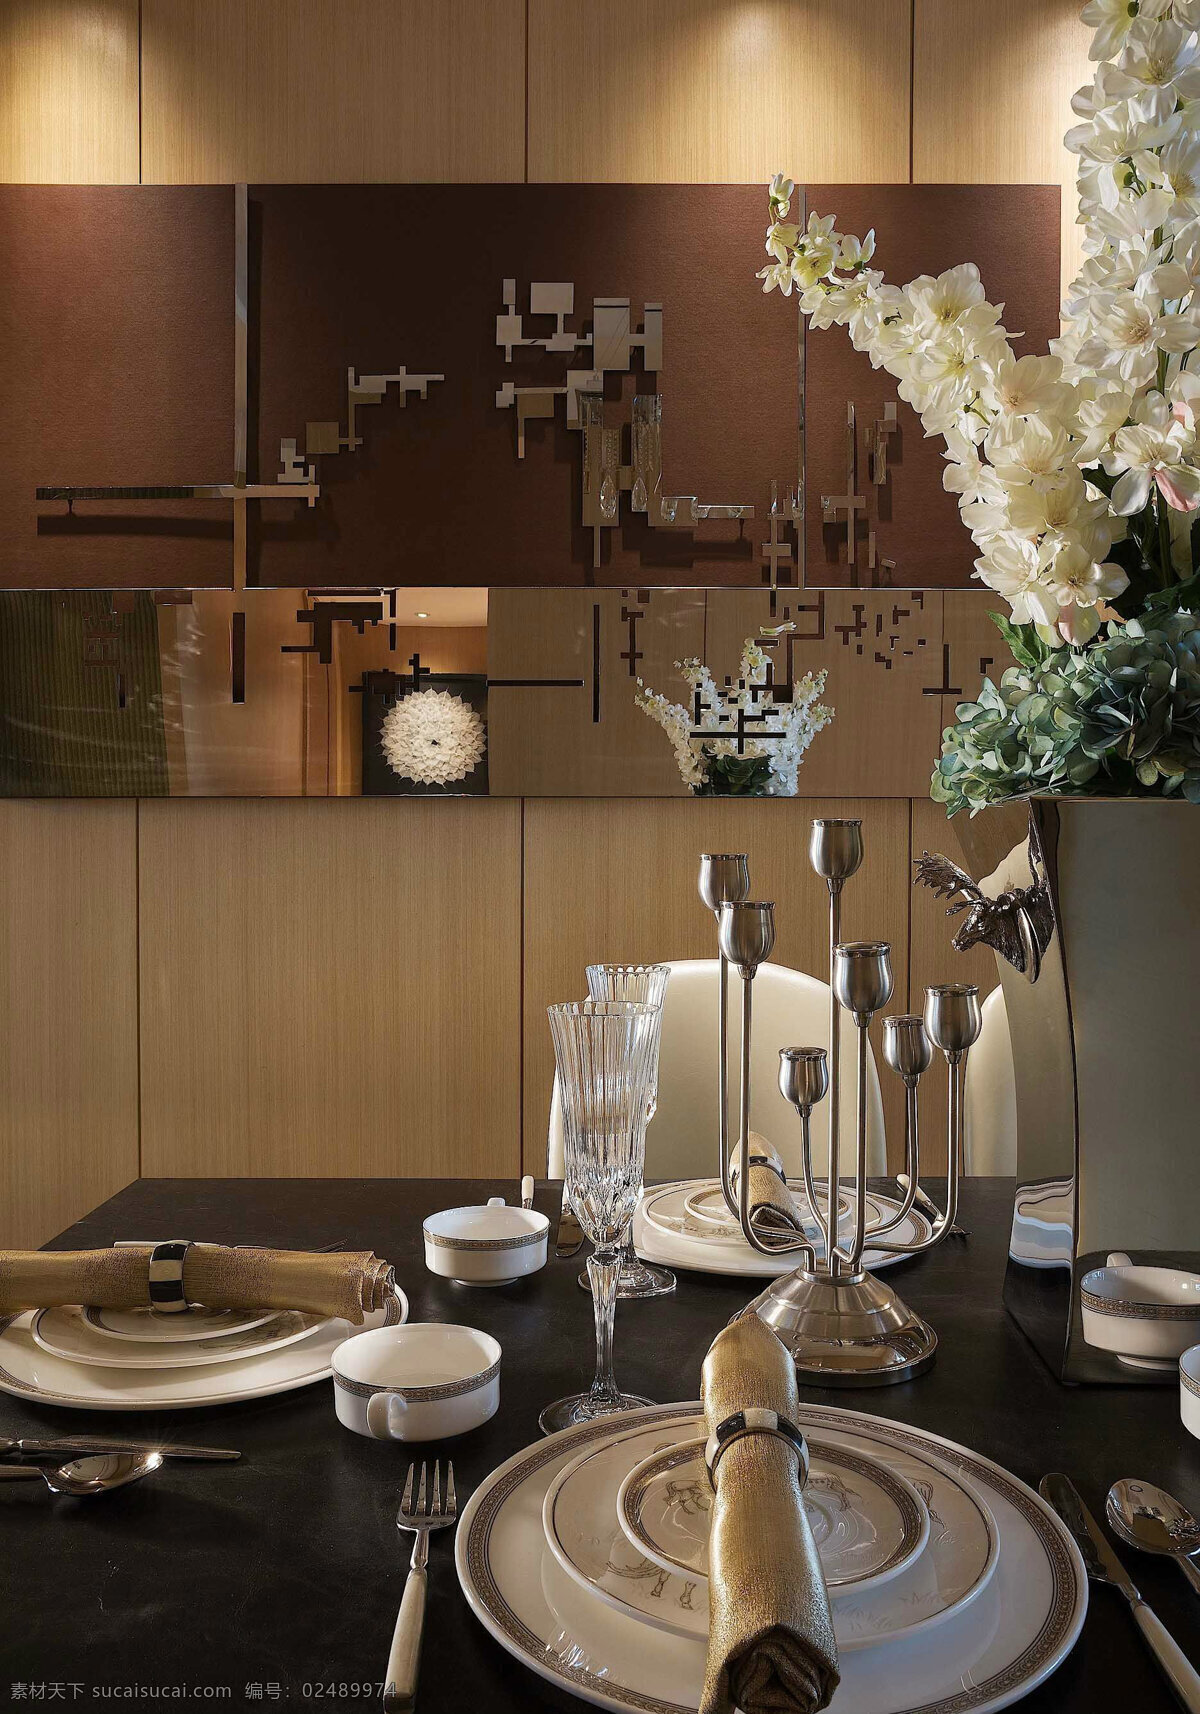 室内 餐厅 餐 壁画 桌 欧 装修 效果图 欧式 现代 圆形精美 瓷质餐具 刀叉 铜质摆件